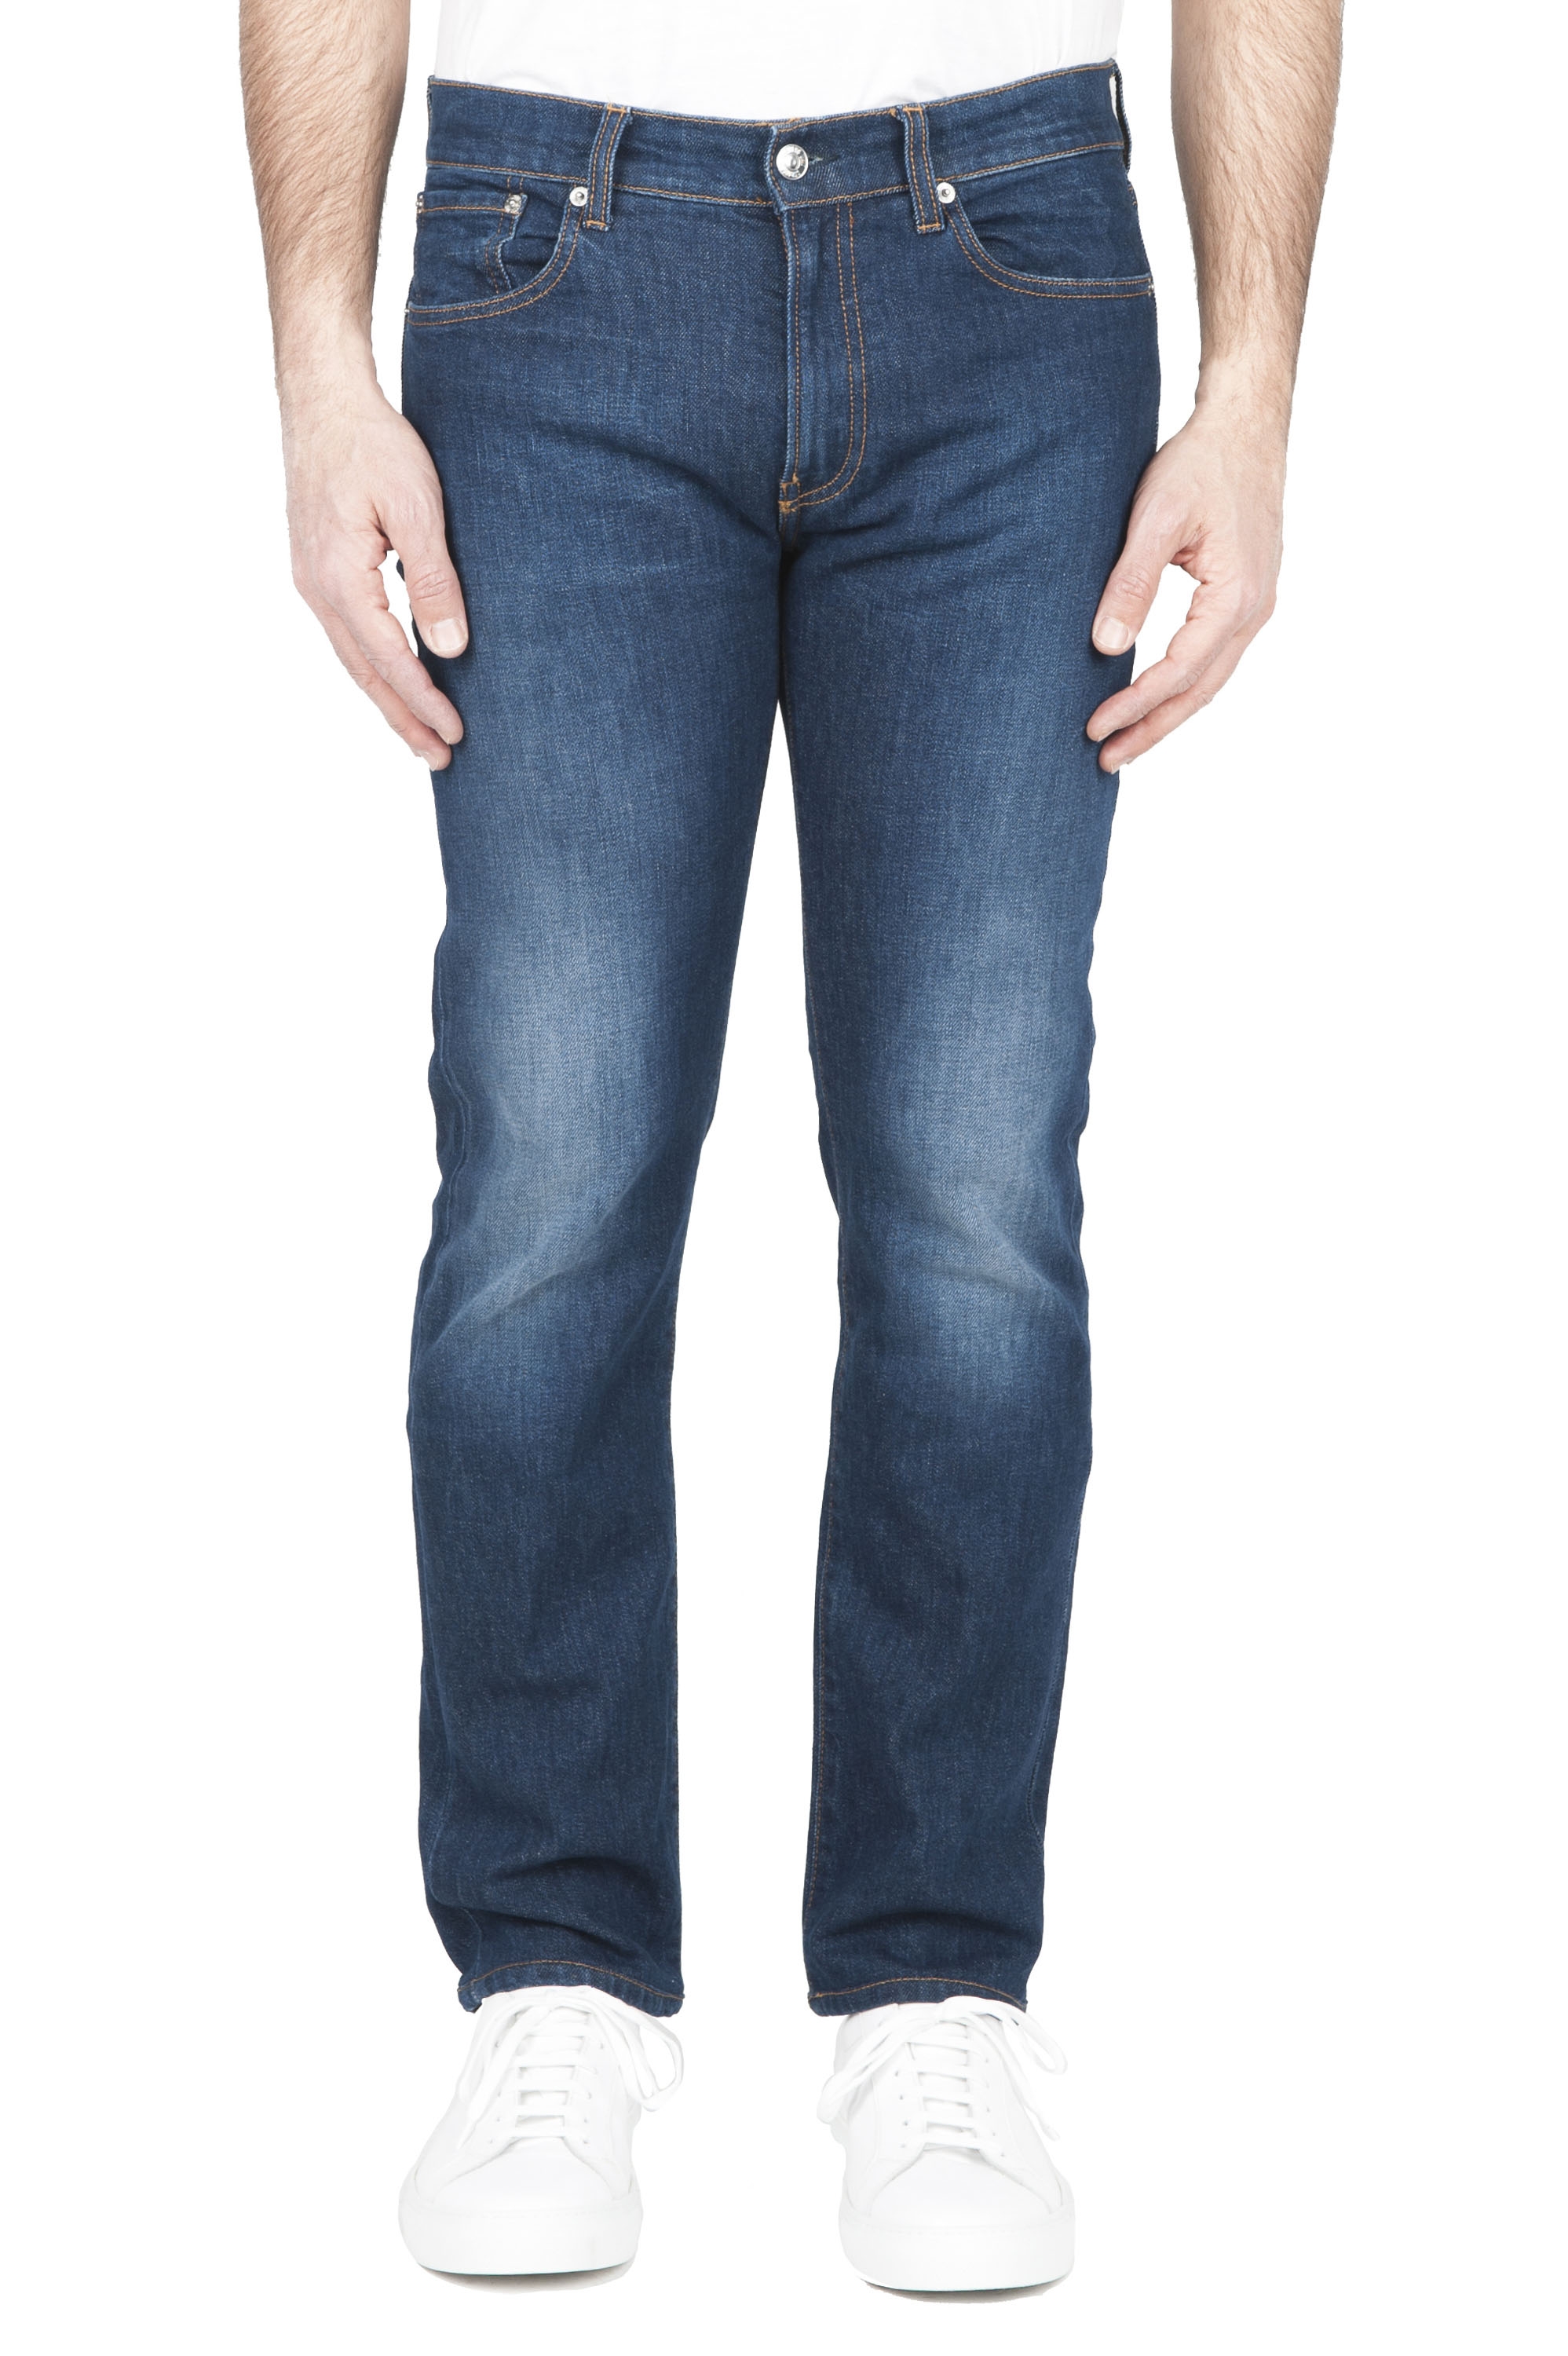 SBU 01453 Jeans en coton stretch délavé usé teinté indigo 01